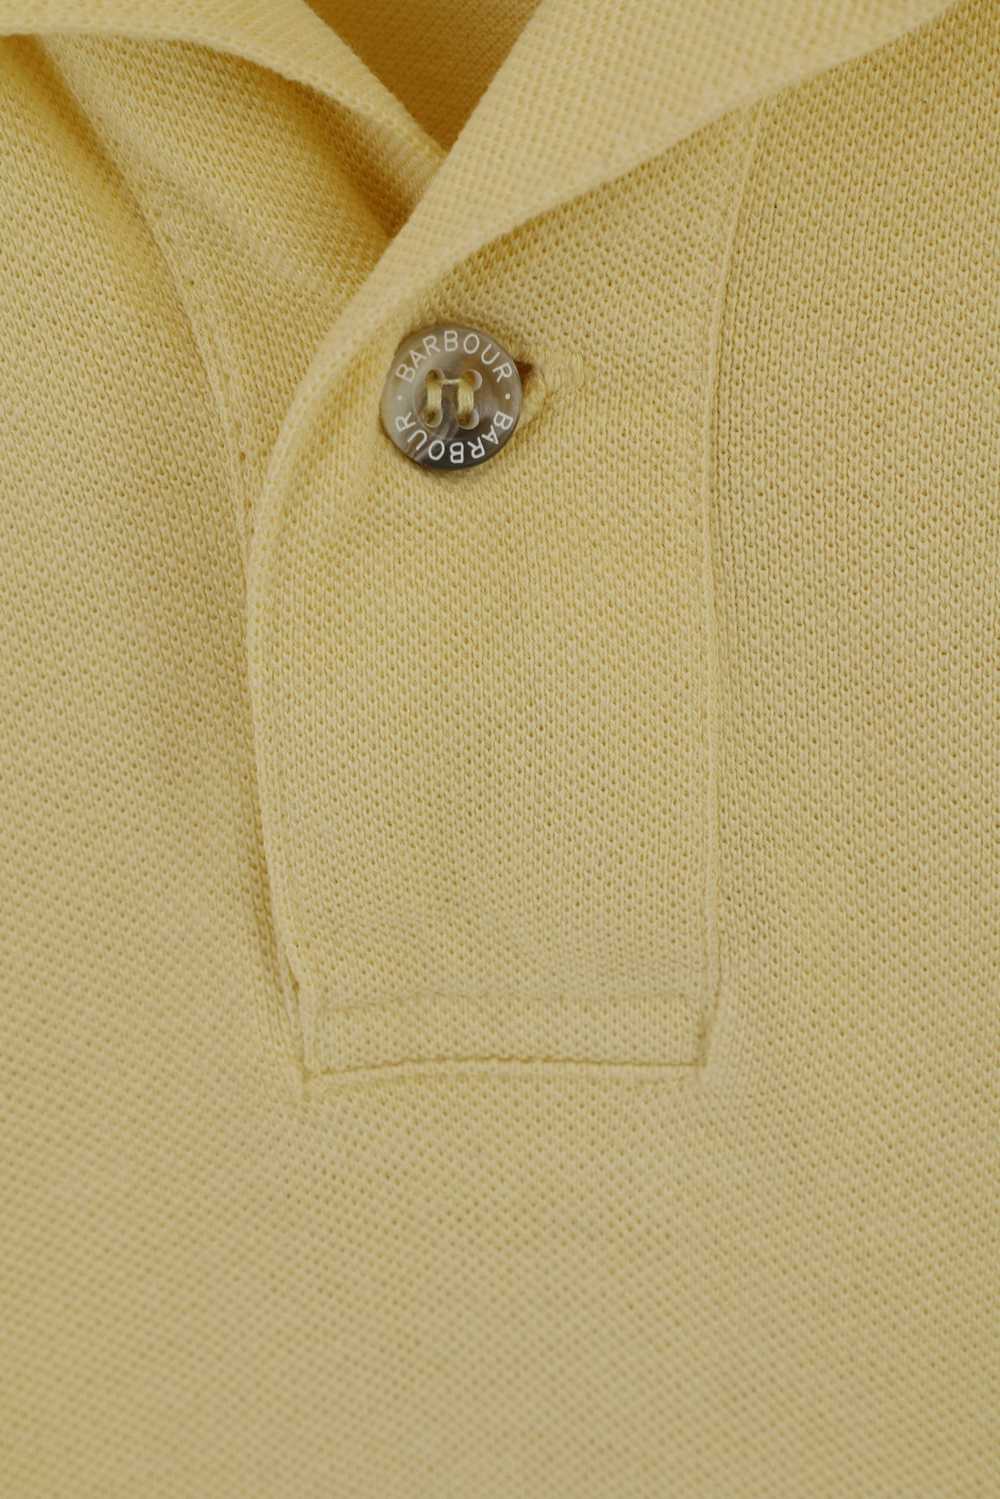 Barbour Barbour Men S Polo Shirt Yellow Cotton De… - image 4